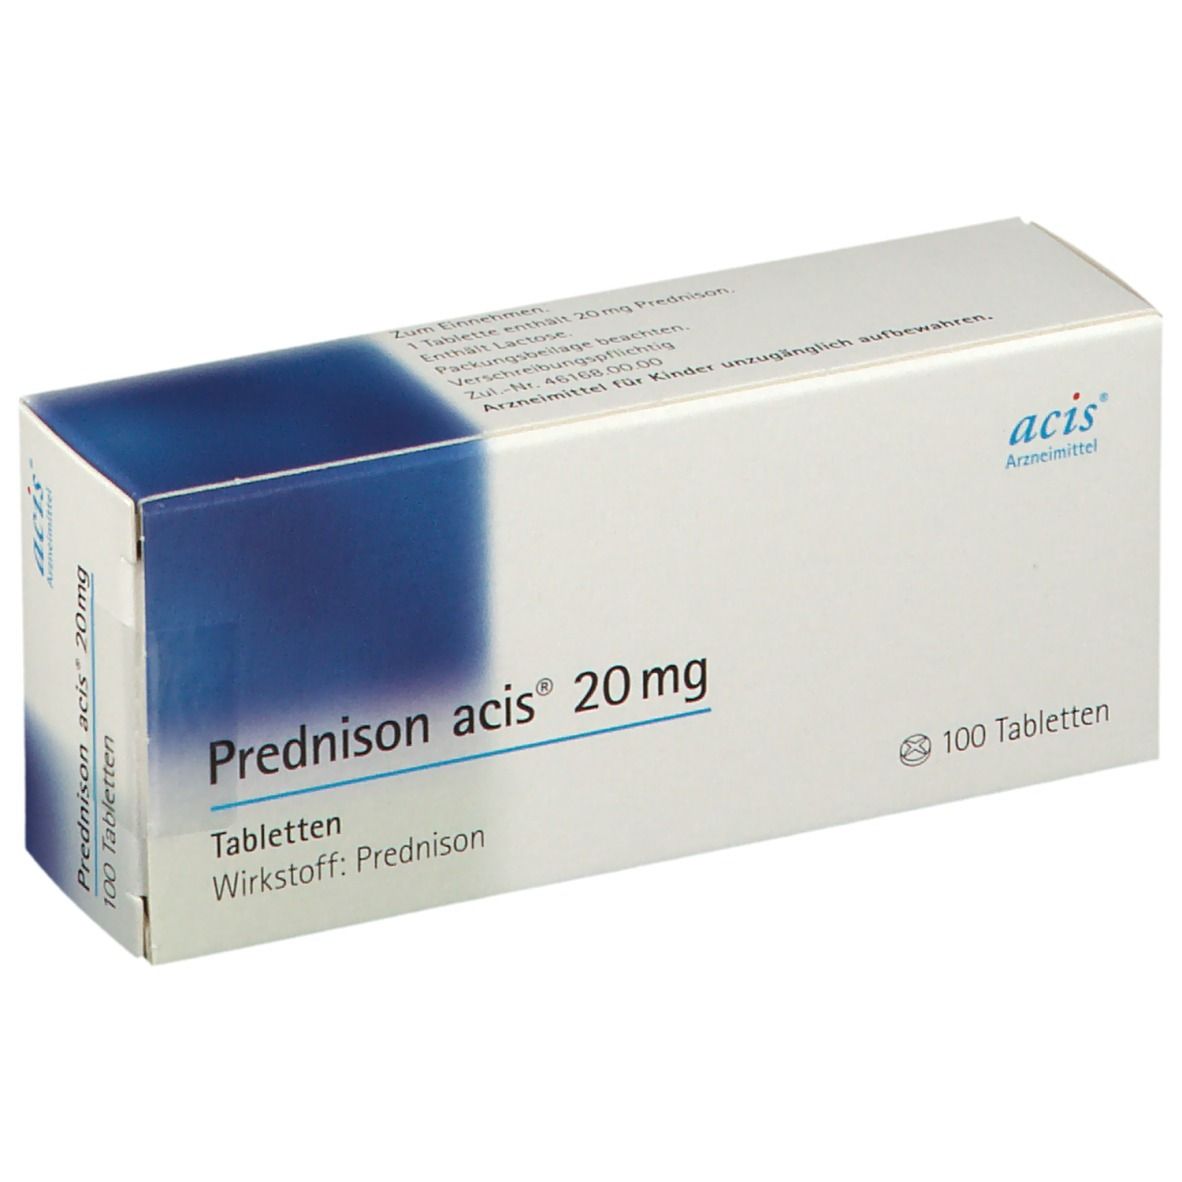 Prednison acis® 20Mg